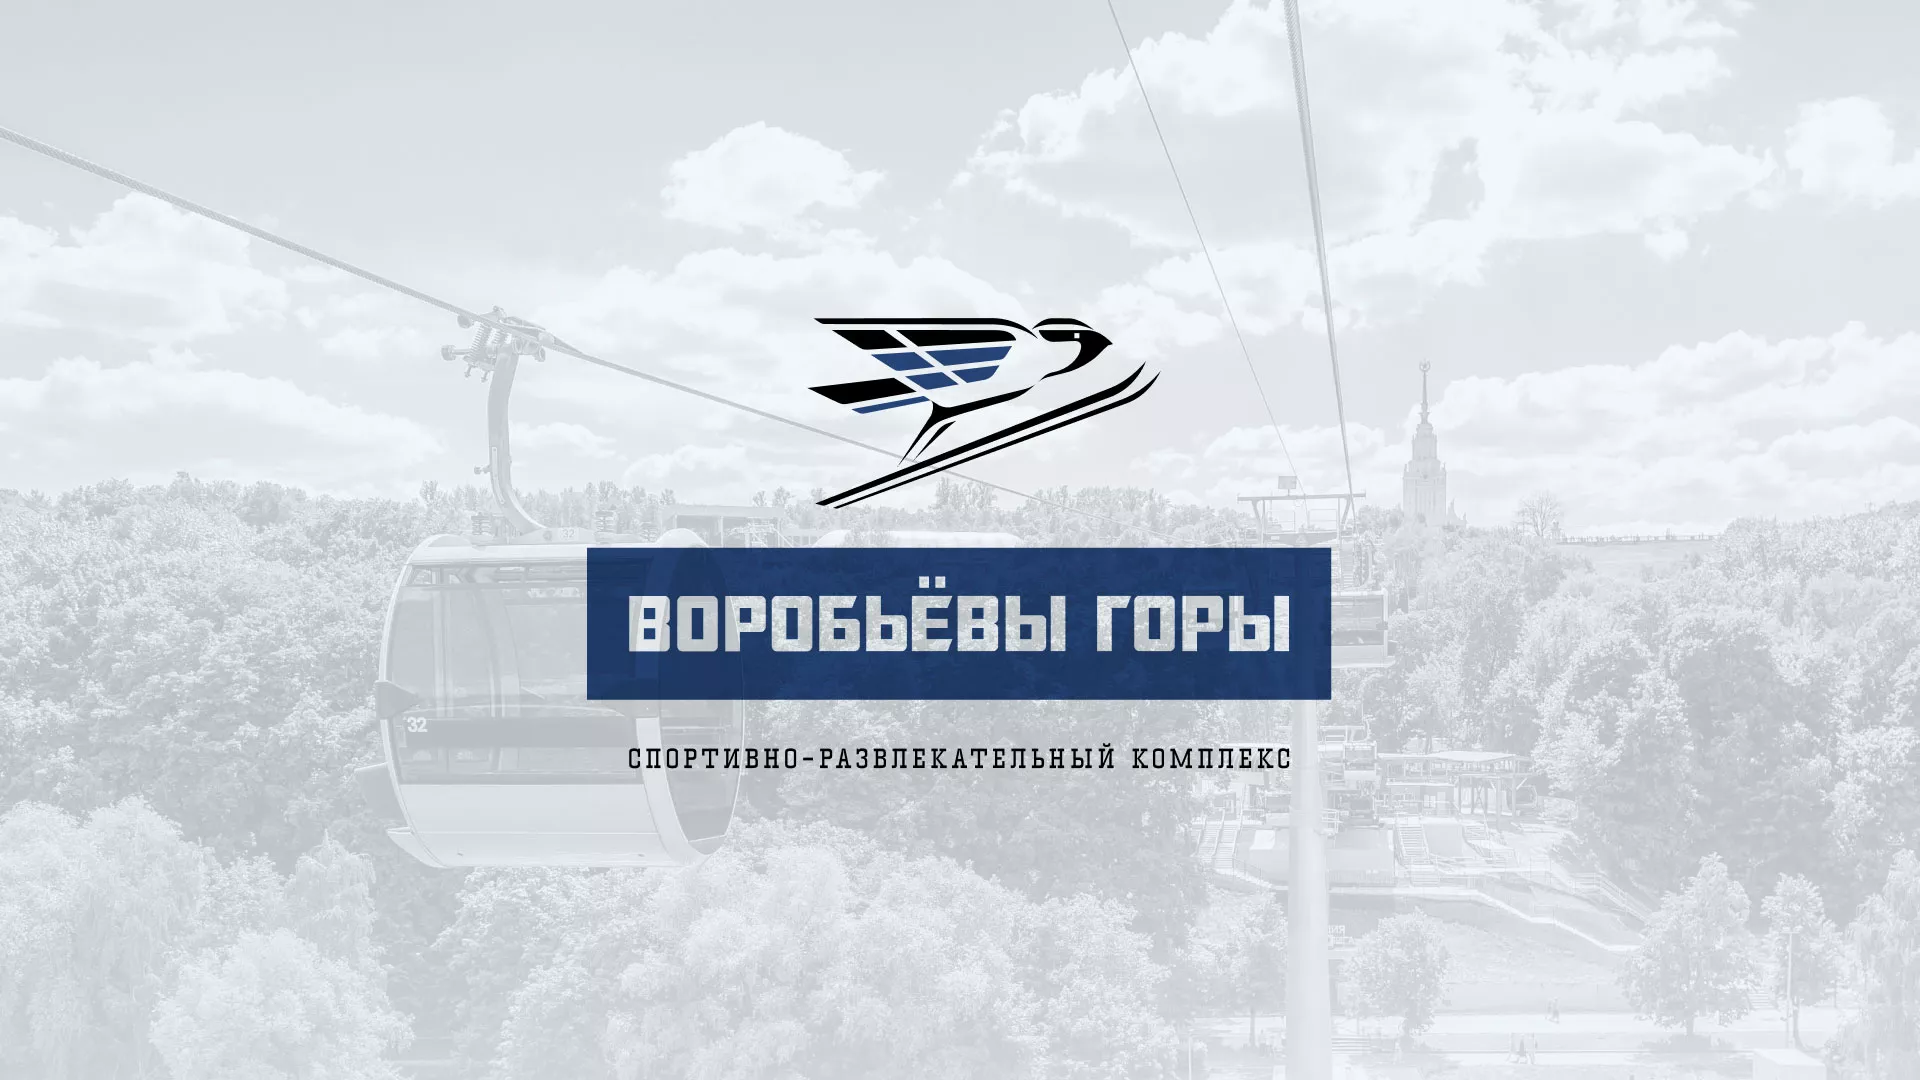 Разработка сайта в Бийске для спортивно-развлекательного комплекса «Воробьёвы горы»